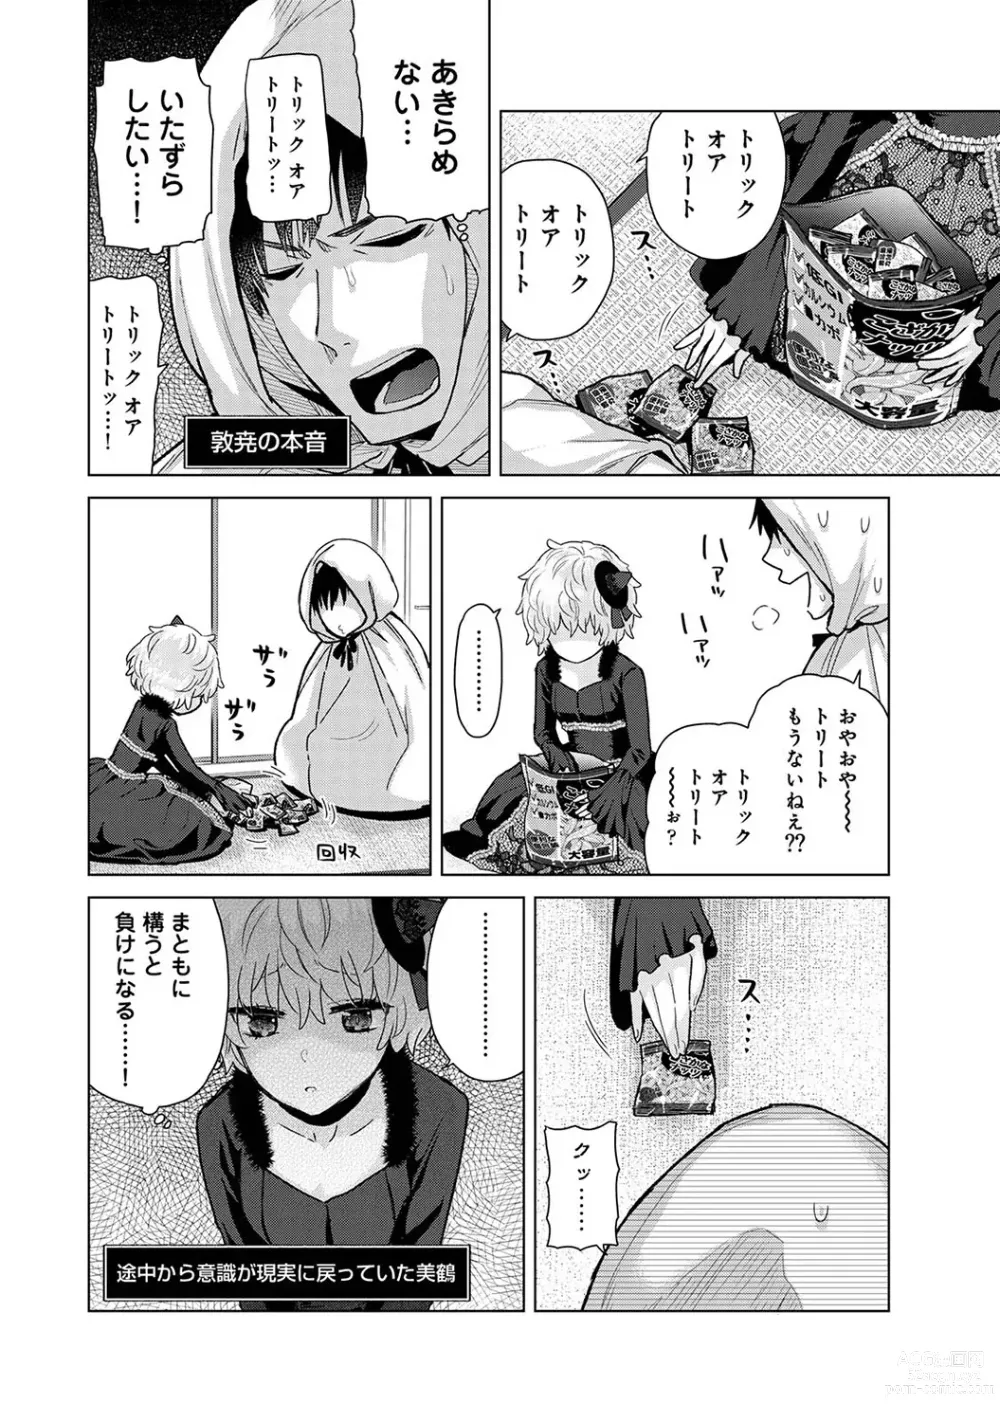 Page 989 of manga Noraneko Shoujo to no Kurashikata Ch. 1-41